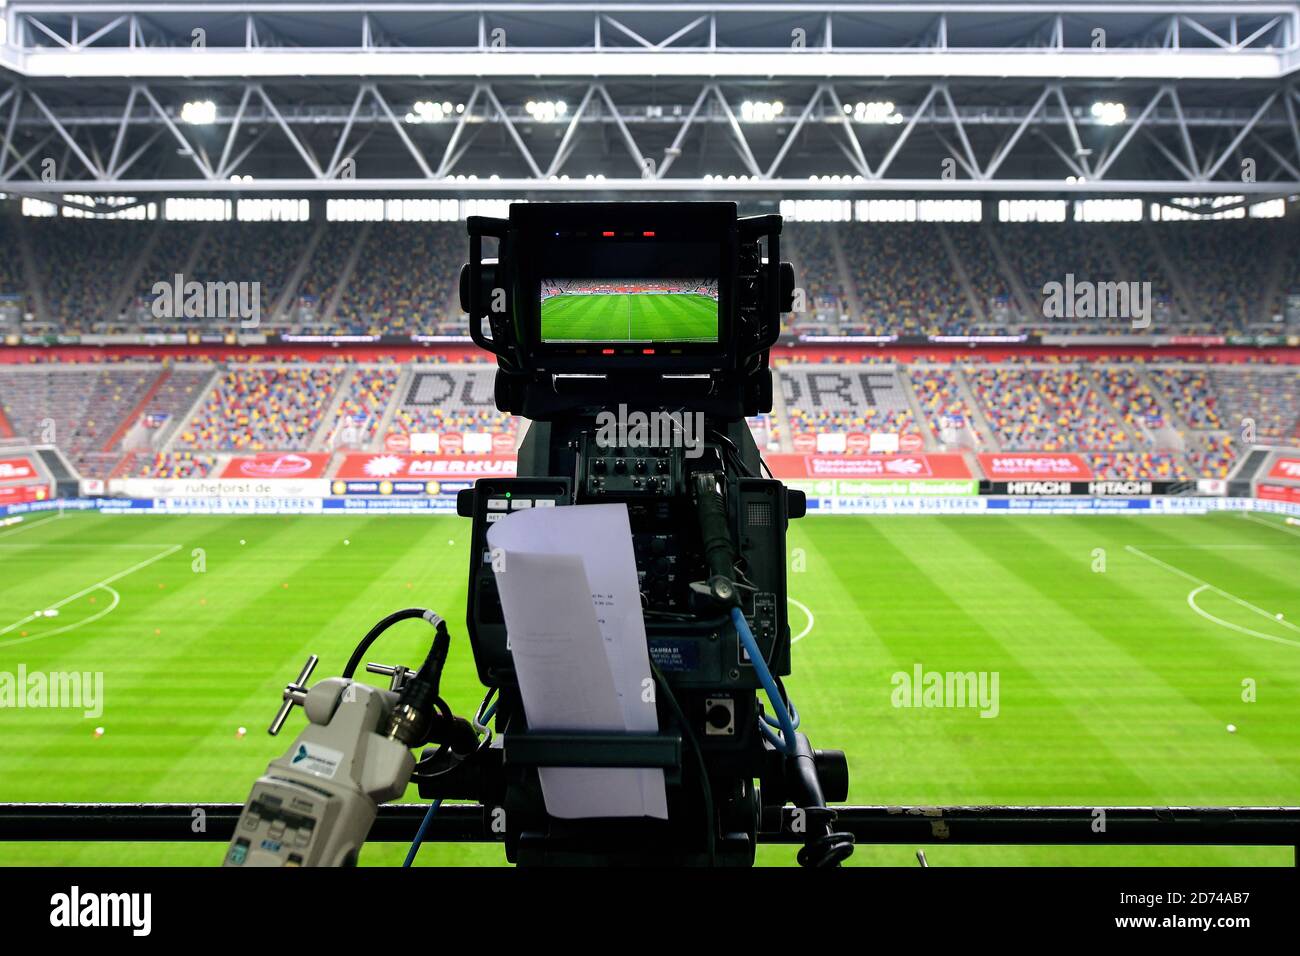 Panoramica della Merkur Spiel Arena vuota a Dusseldorf, Germania con telecamere. Foto Stock